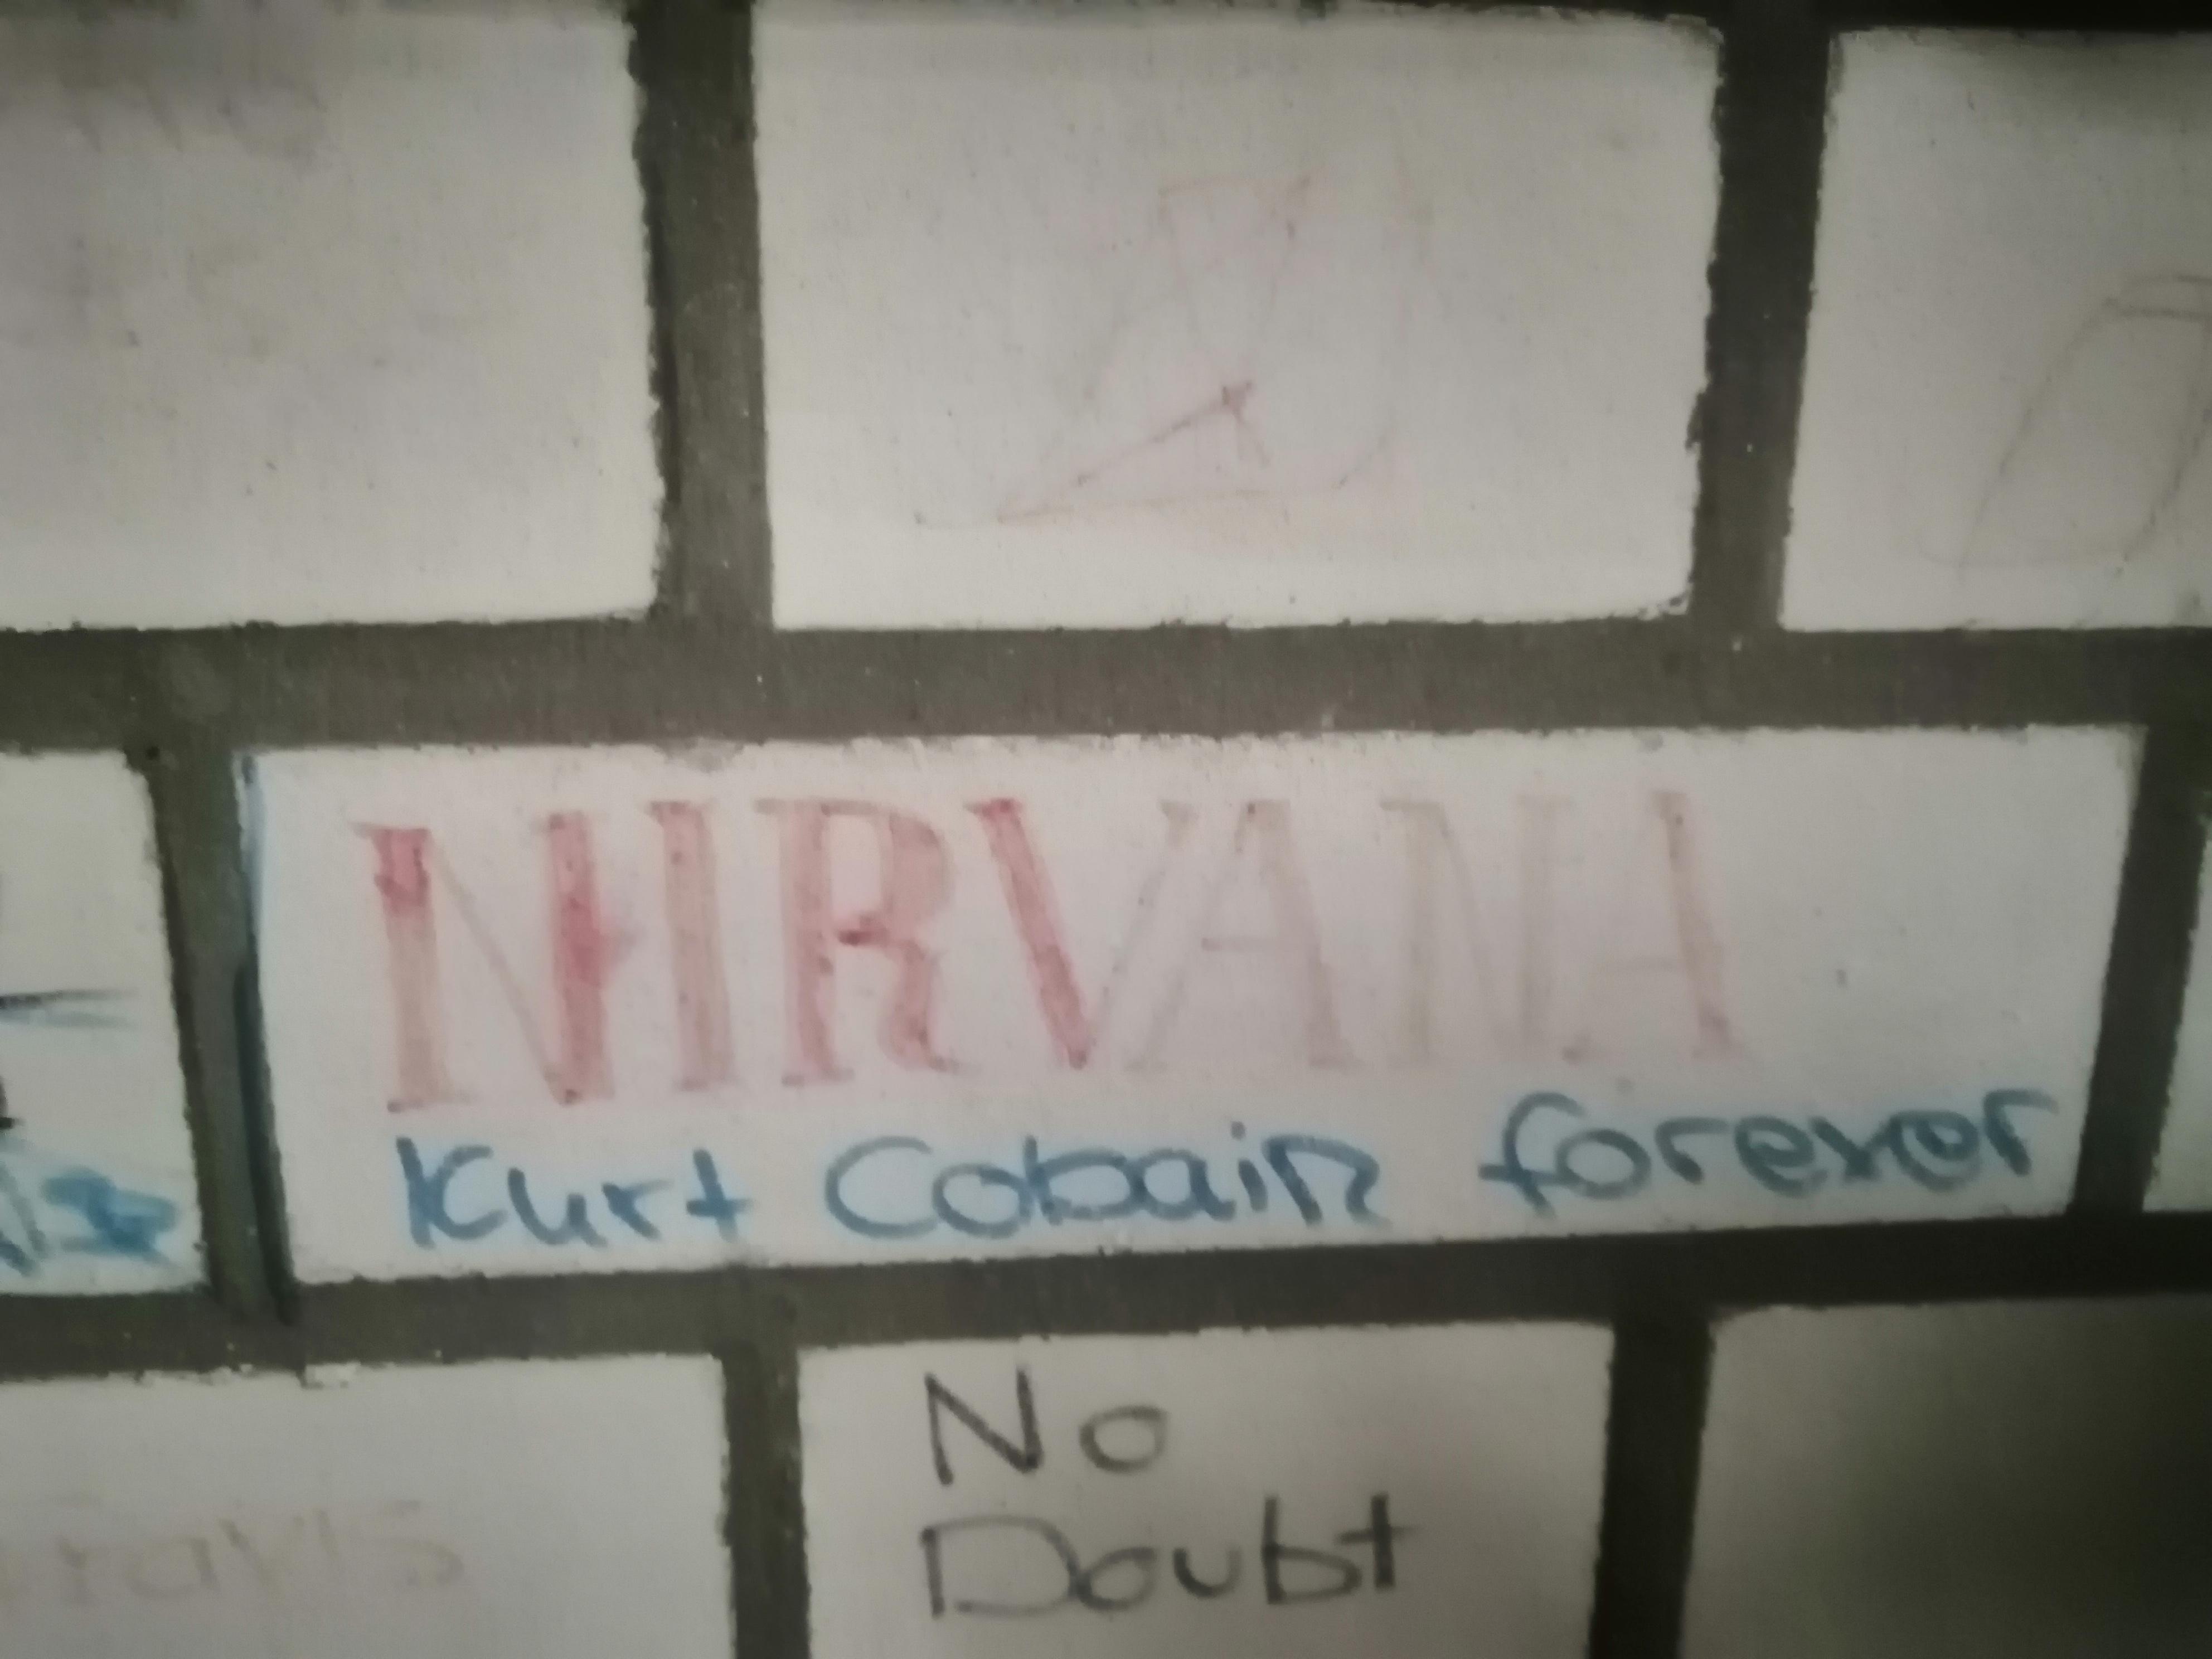 wall - Nbt Kurt Cobain forever No Doubt